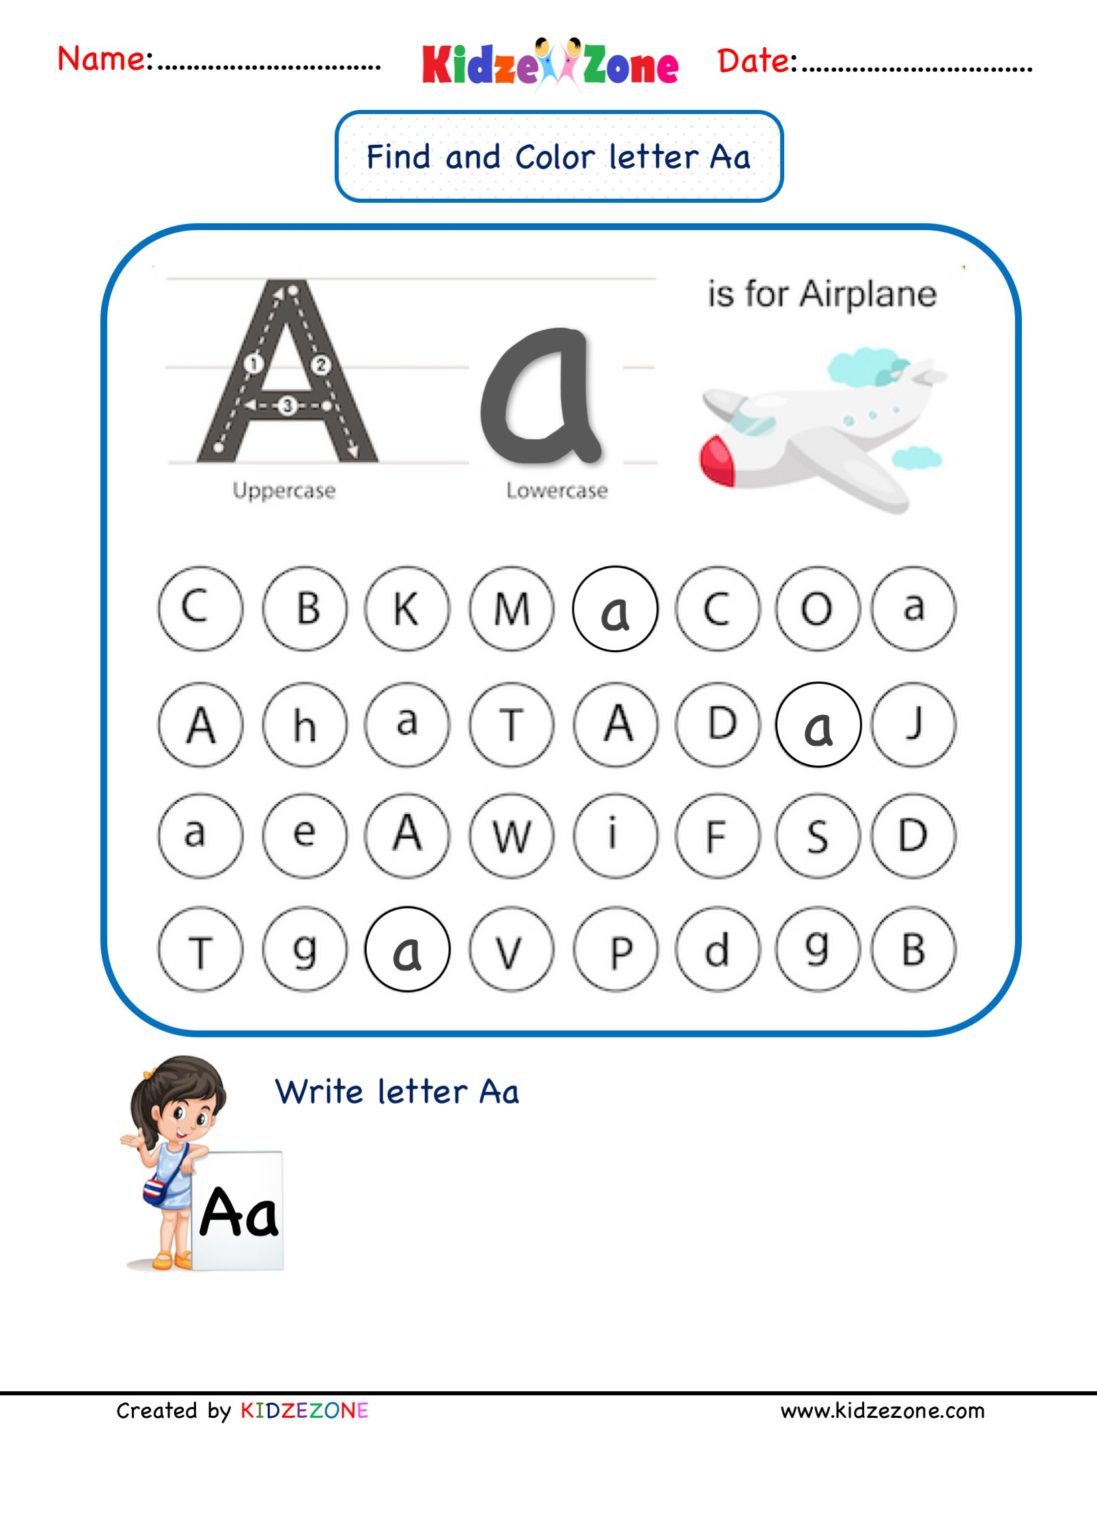 kindergarten-letter-a-find-and-color-worksheet-kidzezone